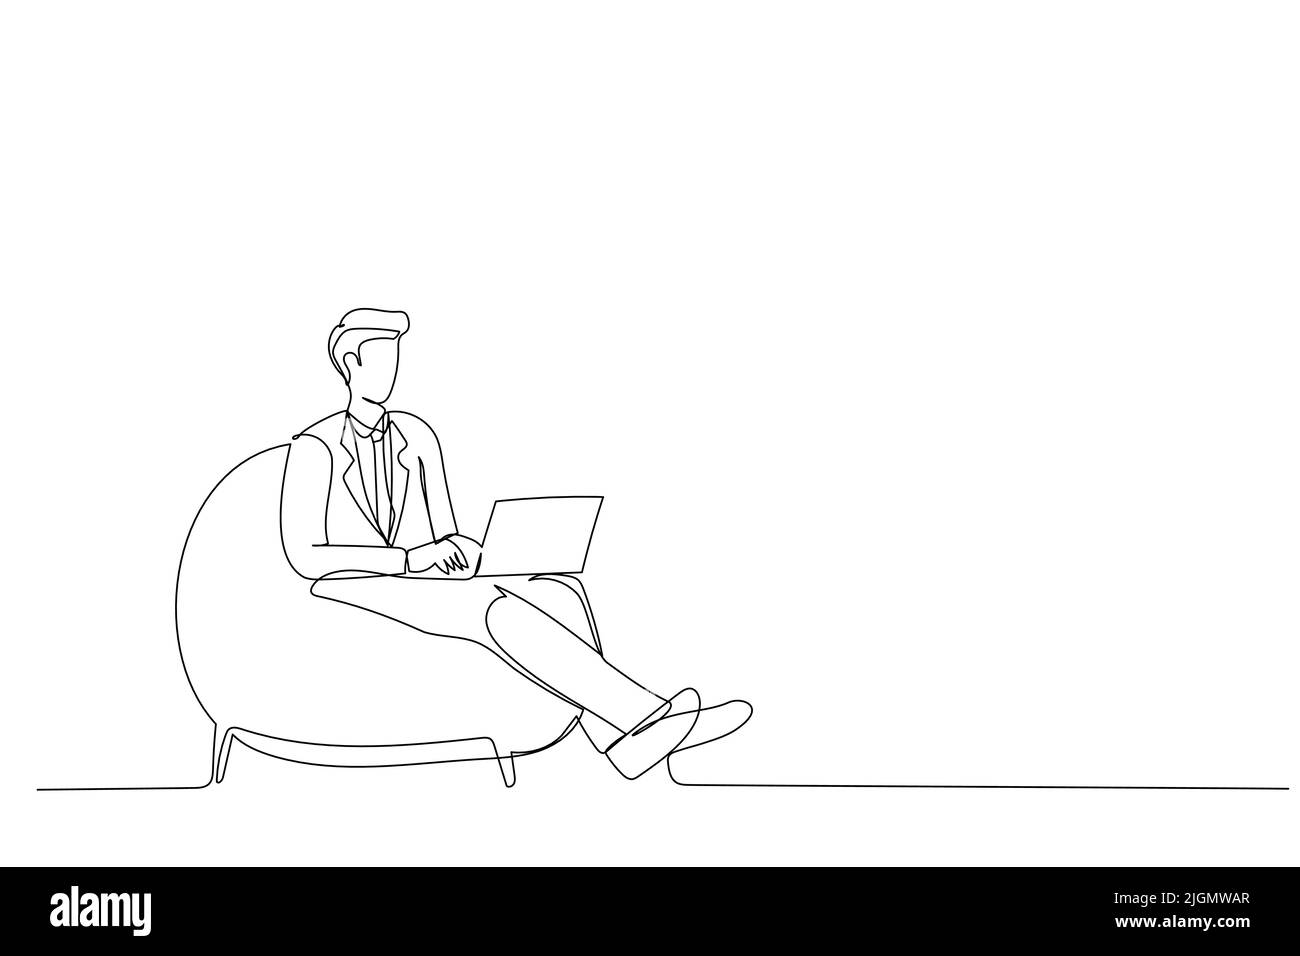 Karikatur eines Mannes, der in einem Taschenstuhl sitzt und E-Mail schreibt, im Heimbüro, auf dem Platz zum Kopieren. Vektor-Design mit einer durchgehenden Linie Stock Vektor